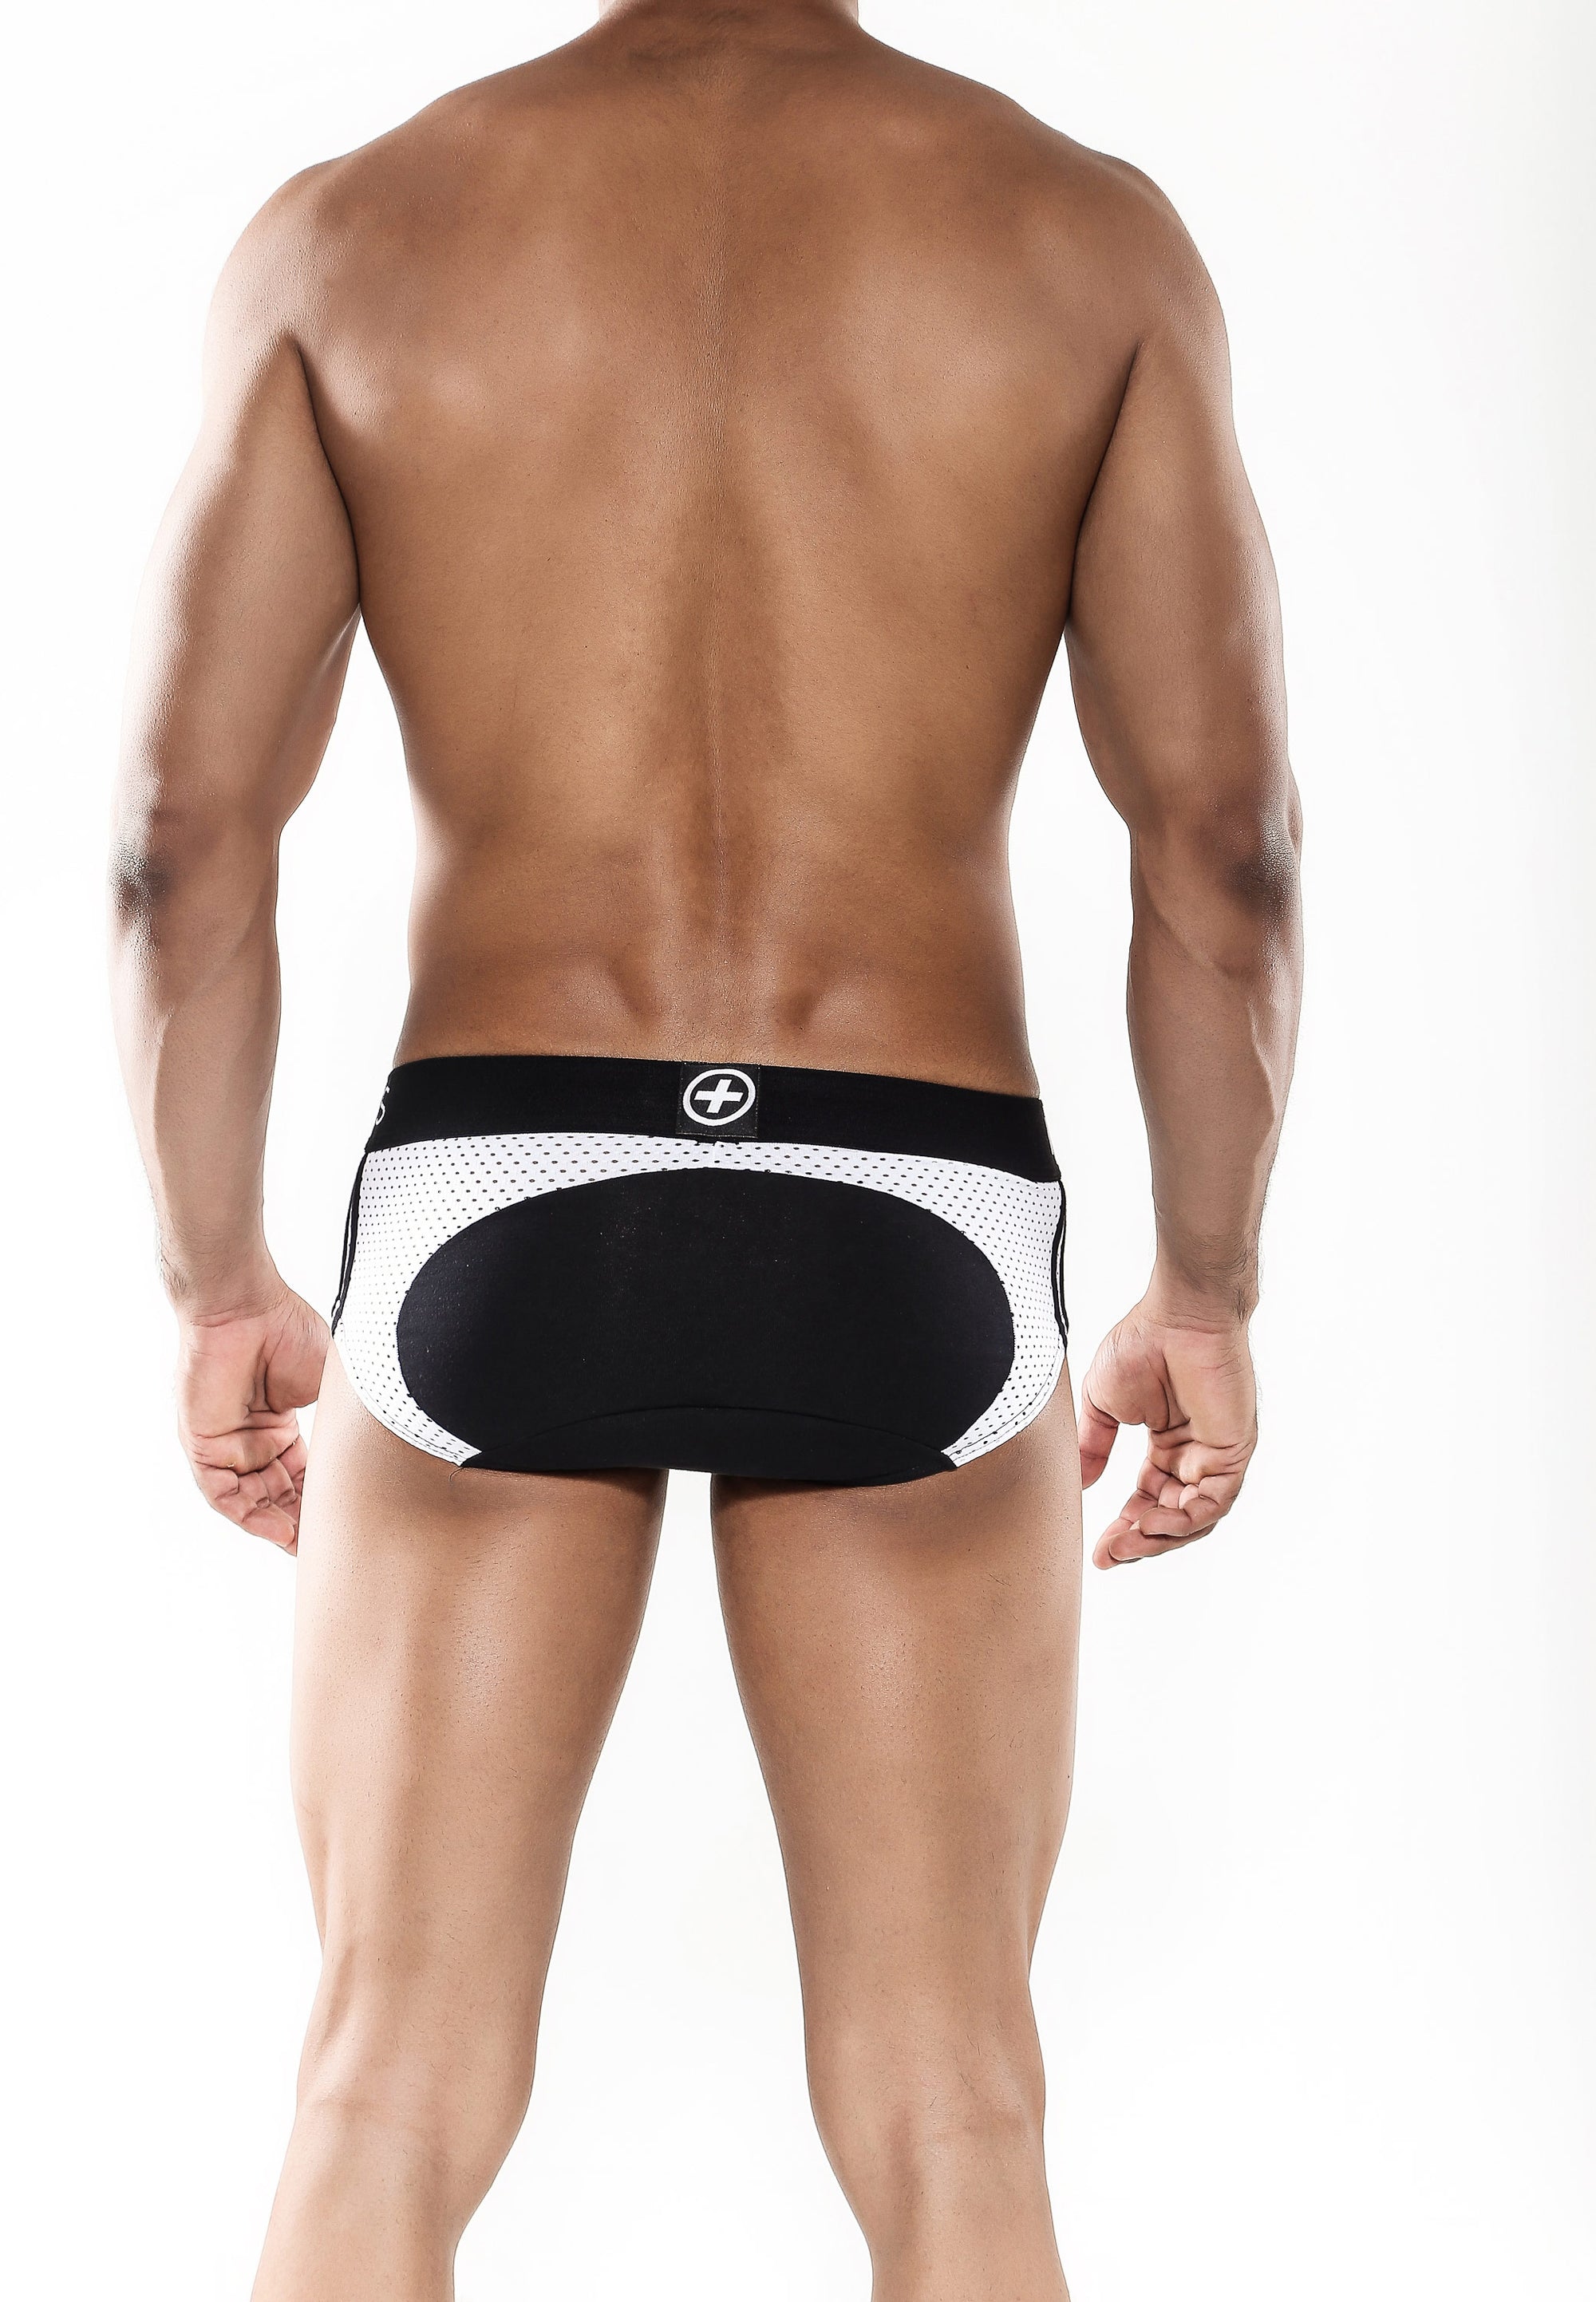 Malebasics Underwear Spot Men's Black Brief